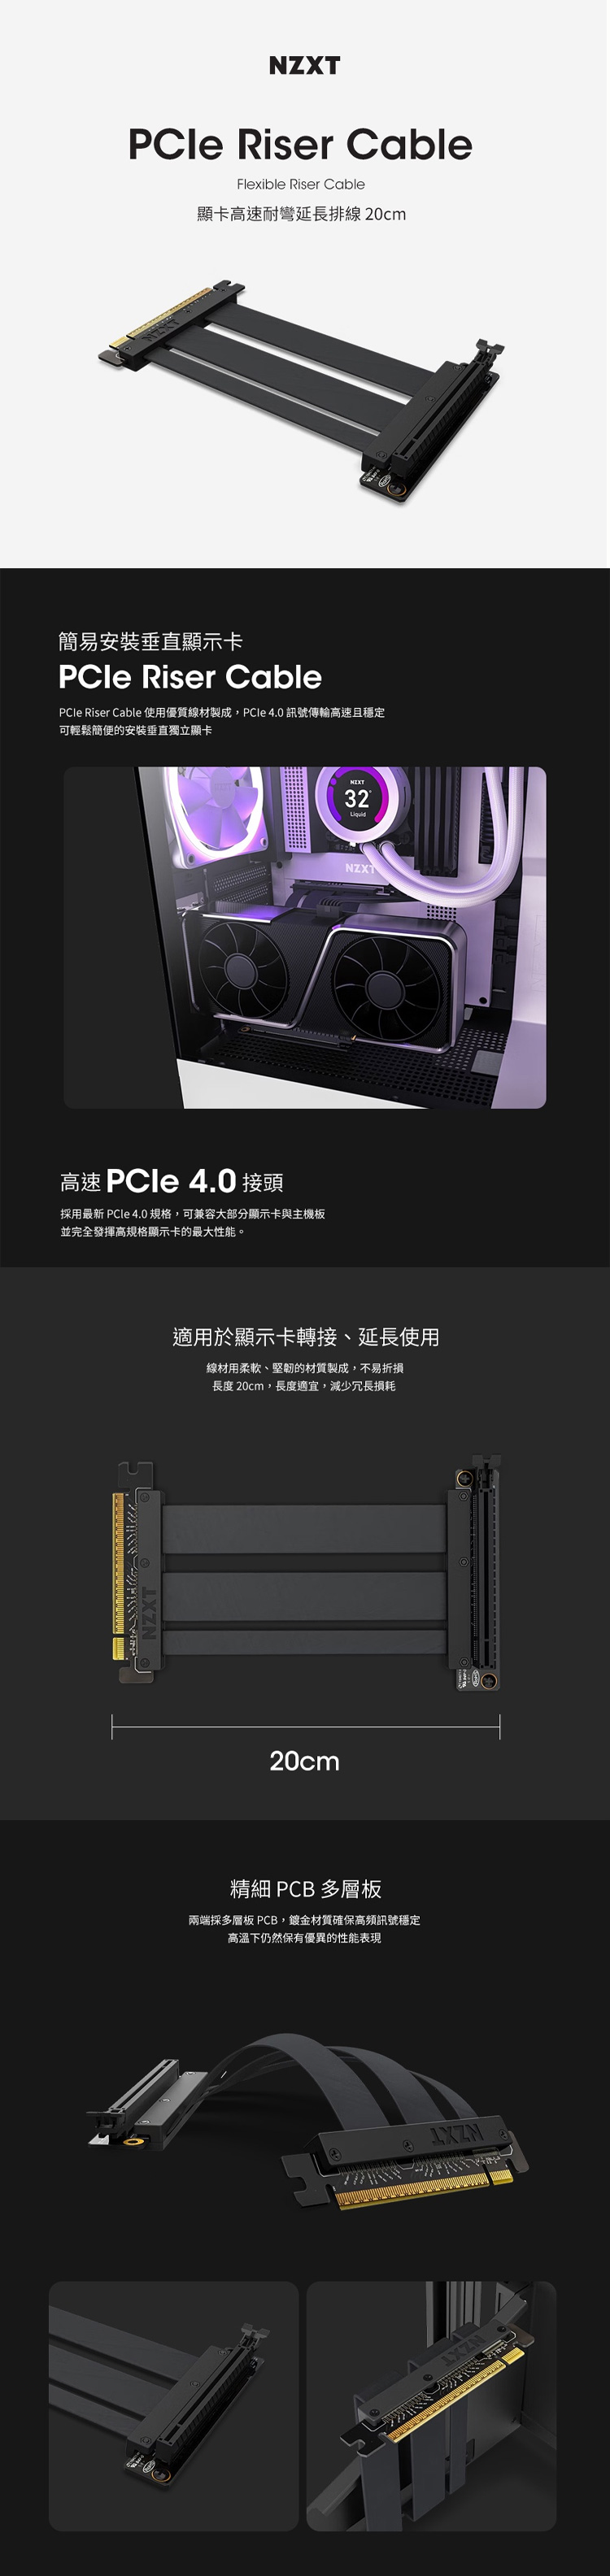 PCIE-4-內.jpg